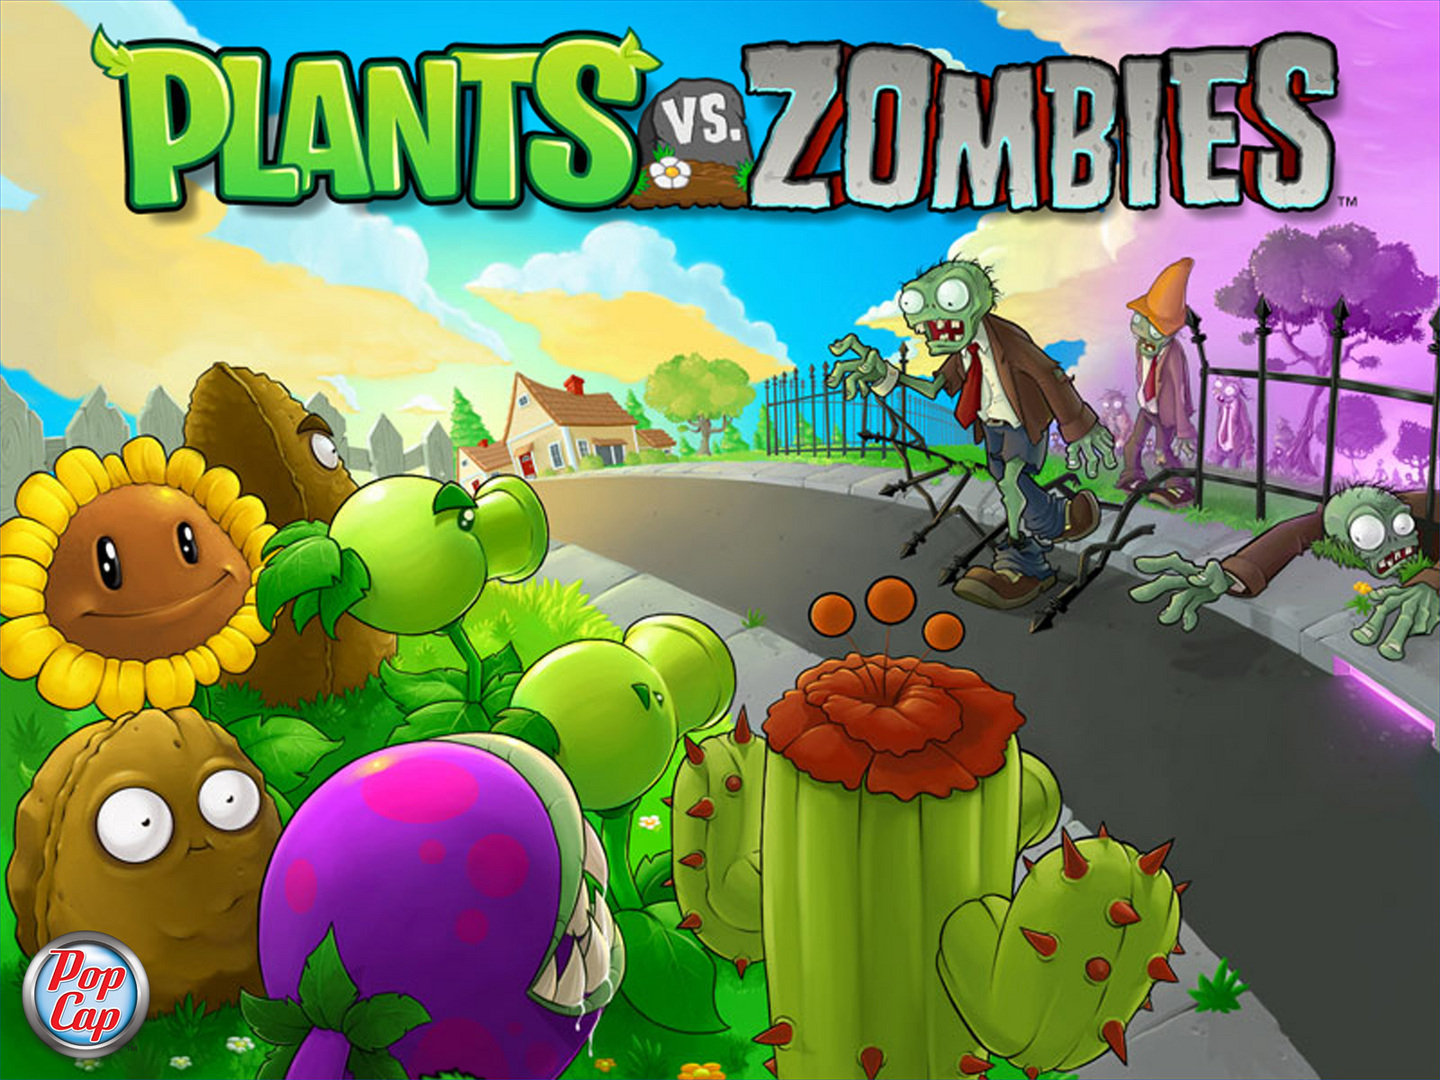 Plants vs. Zombies videojuego: Plataformas y DLCs